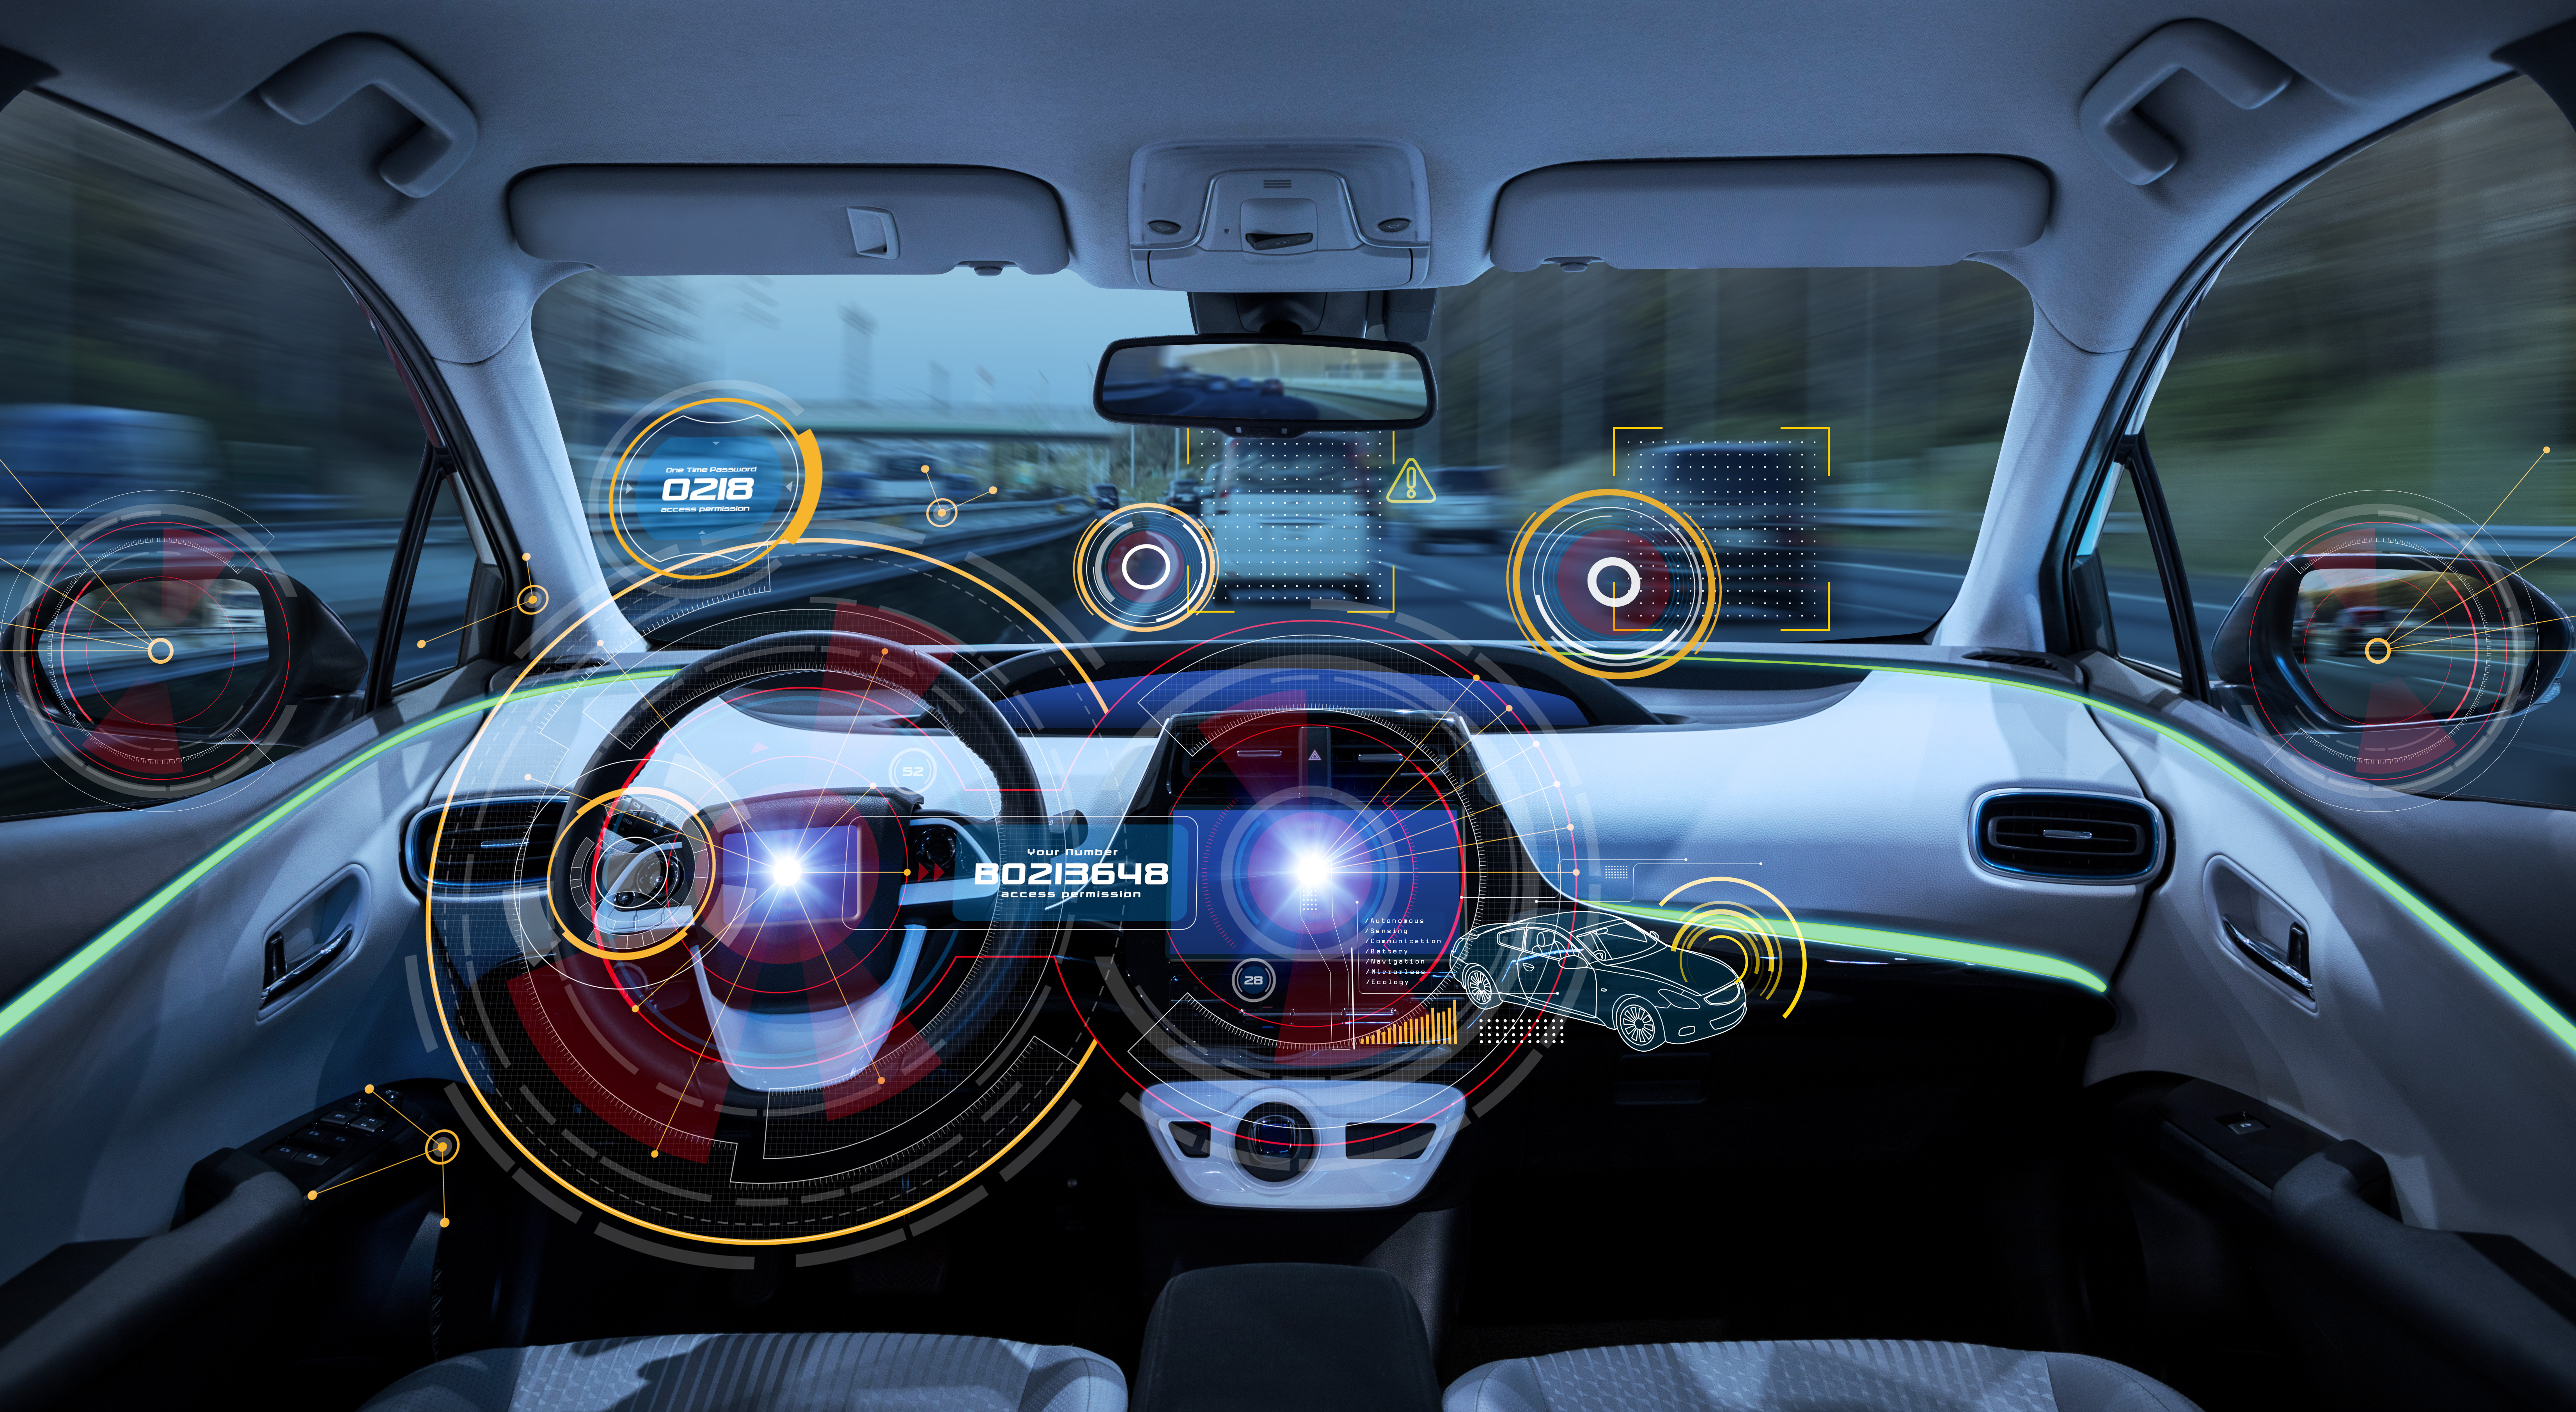 ถึงยุครถยนต์ไฟฟ้าหรือยัง? วิเคราะห์ Data Insights ตลาด EV โลก...